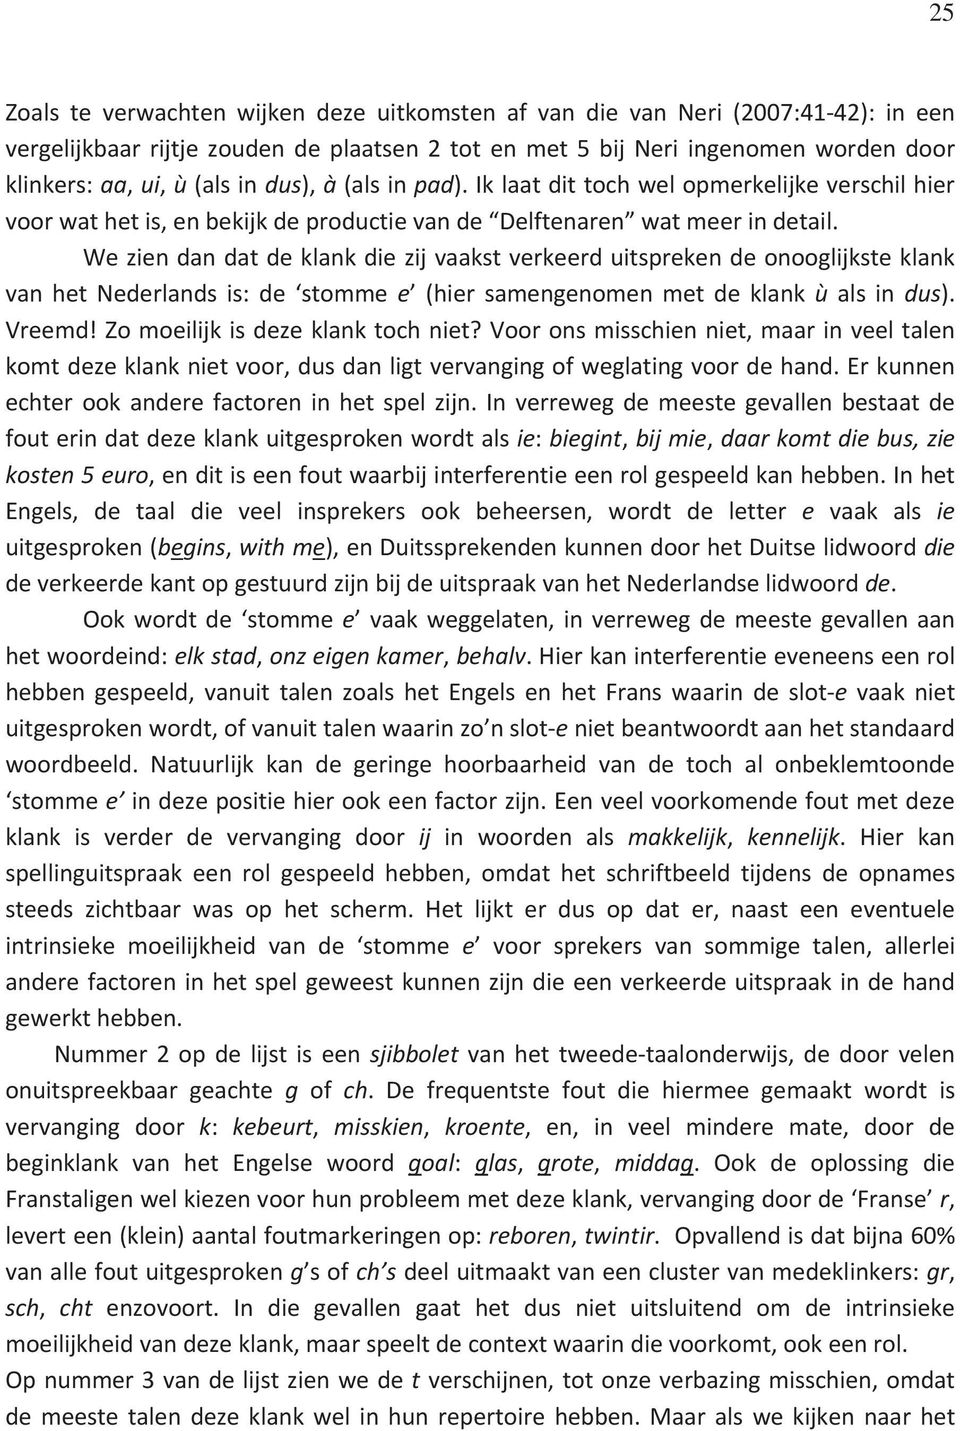 Weziendandatdeklankdiezijvaakstverkeerduitsprekendeonooglijksteklank van het Nederlands is: de stomme e (hier samengenomen met de klank ù als in dus). Vreemd!Zomoeilijkisdezeklanktochniet?